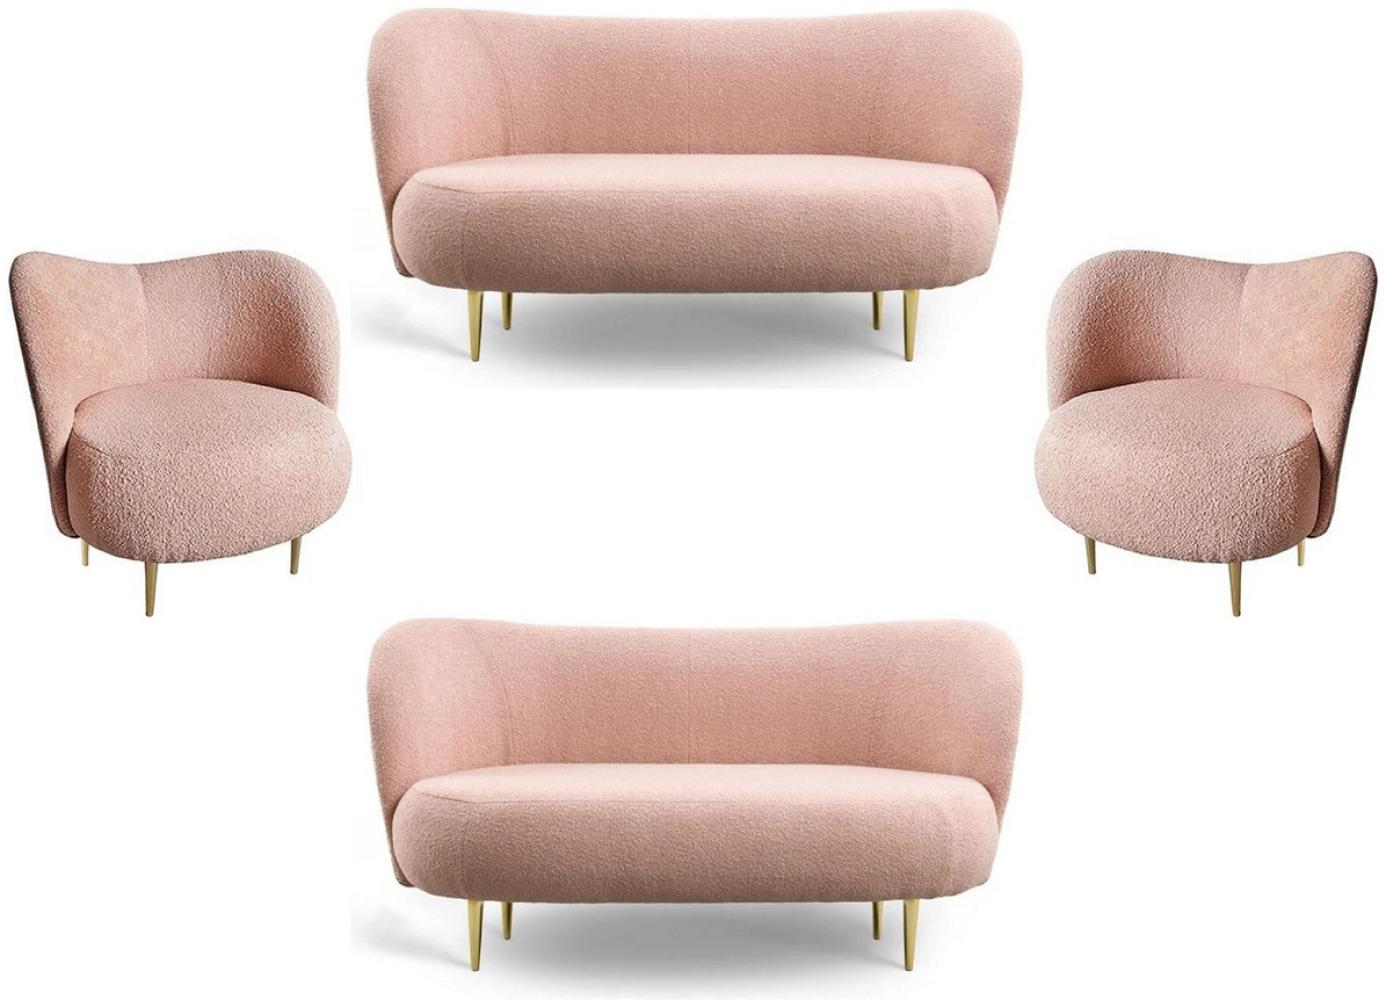 Casa Padrino Luxus Wohnzimmer Set Rosa / Gold - 2 Luxus Sofas mit gebogener Rückenlehne & 2 Luxus Sessel mit gebogener Rückenlehne - Luxus Einrichtung - Wohnzimmer Möbel - Luxus Möbel Bild 1